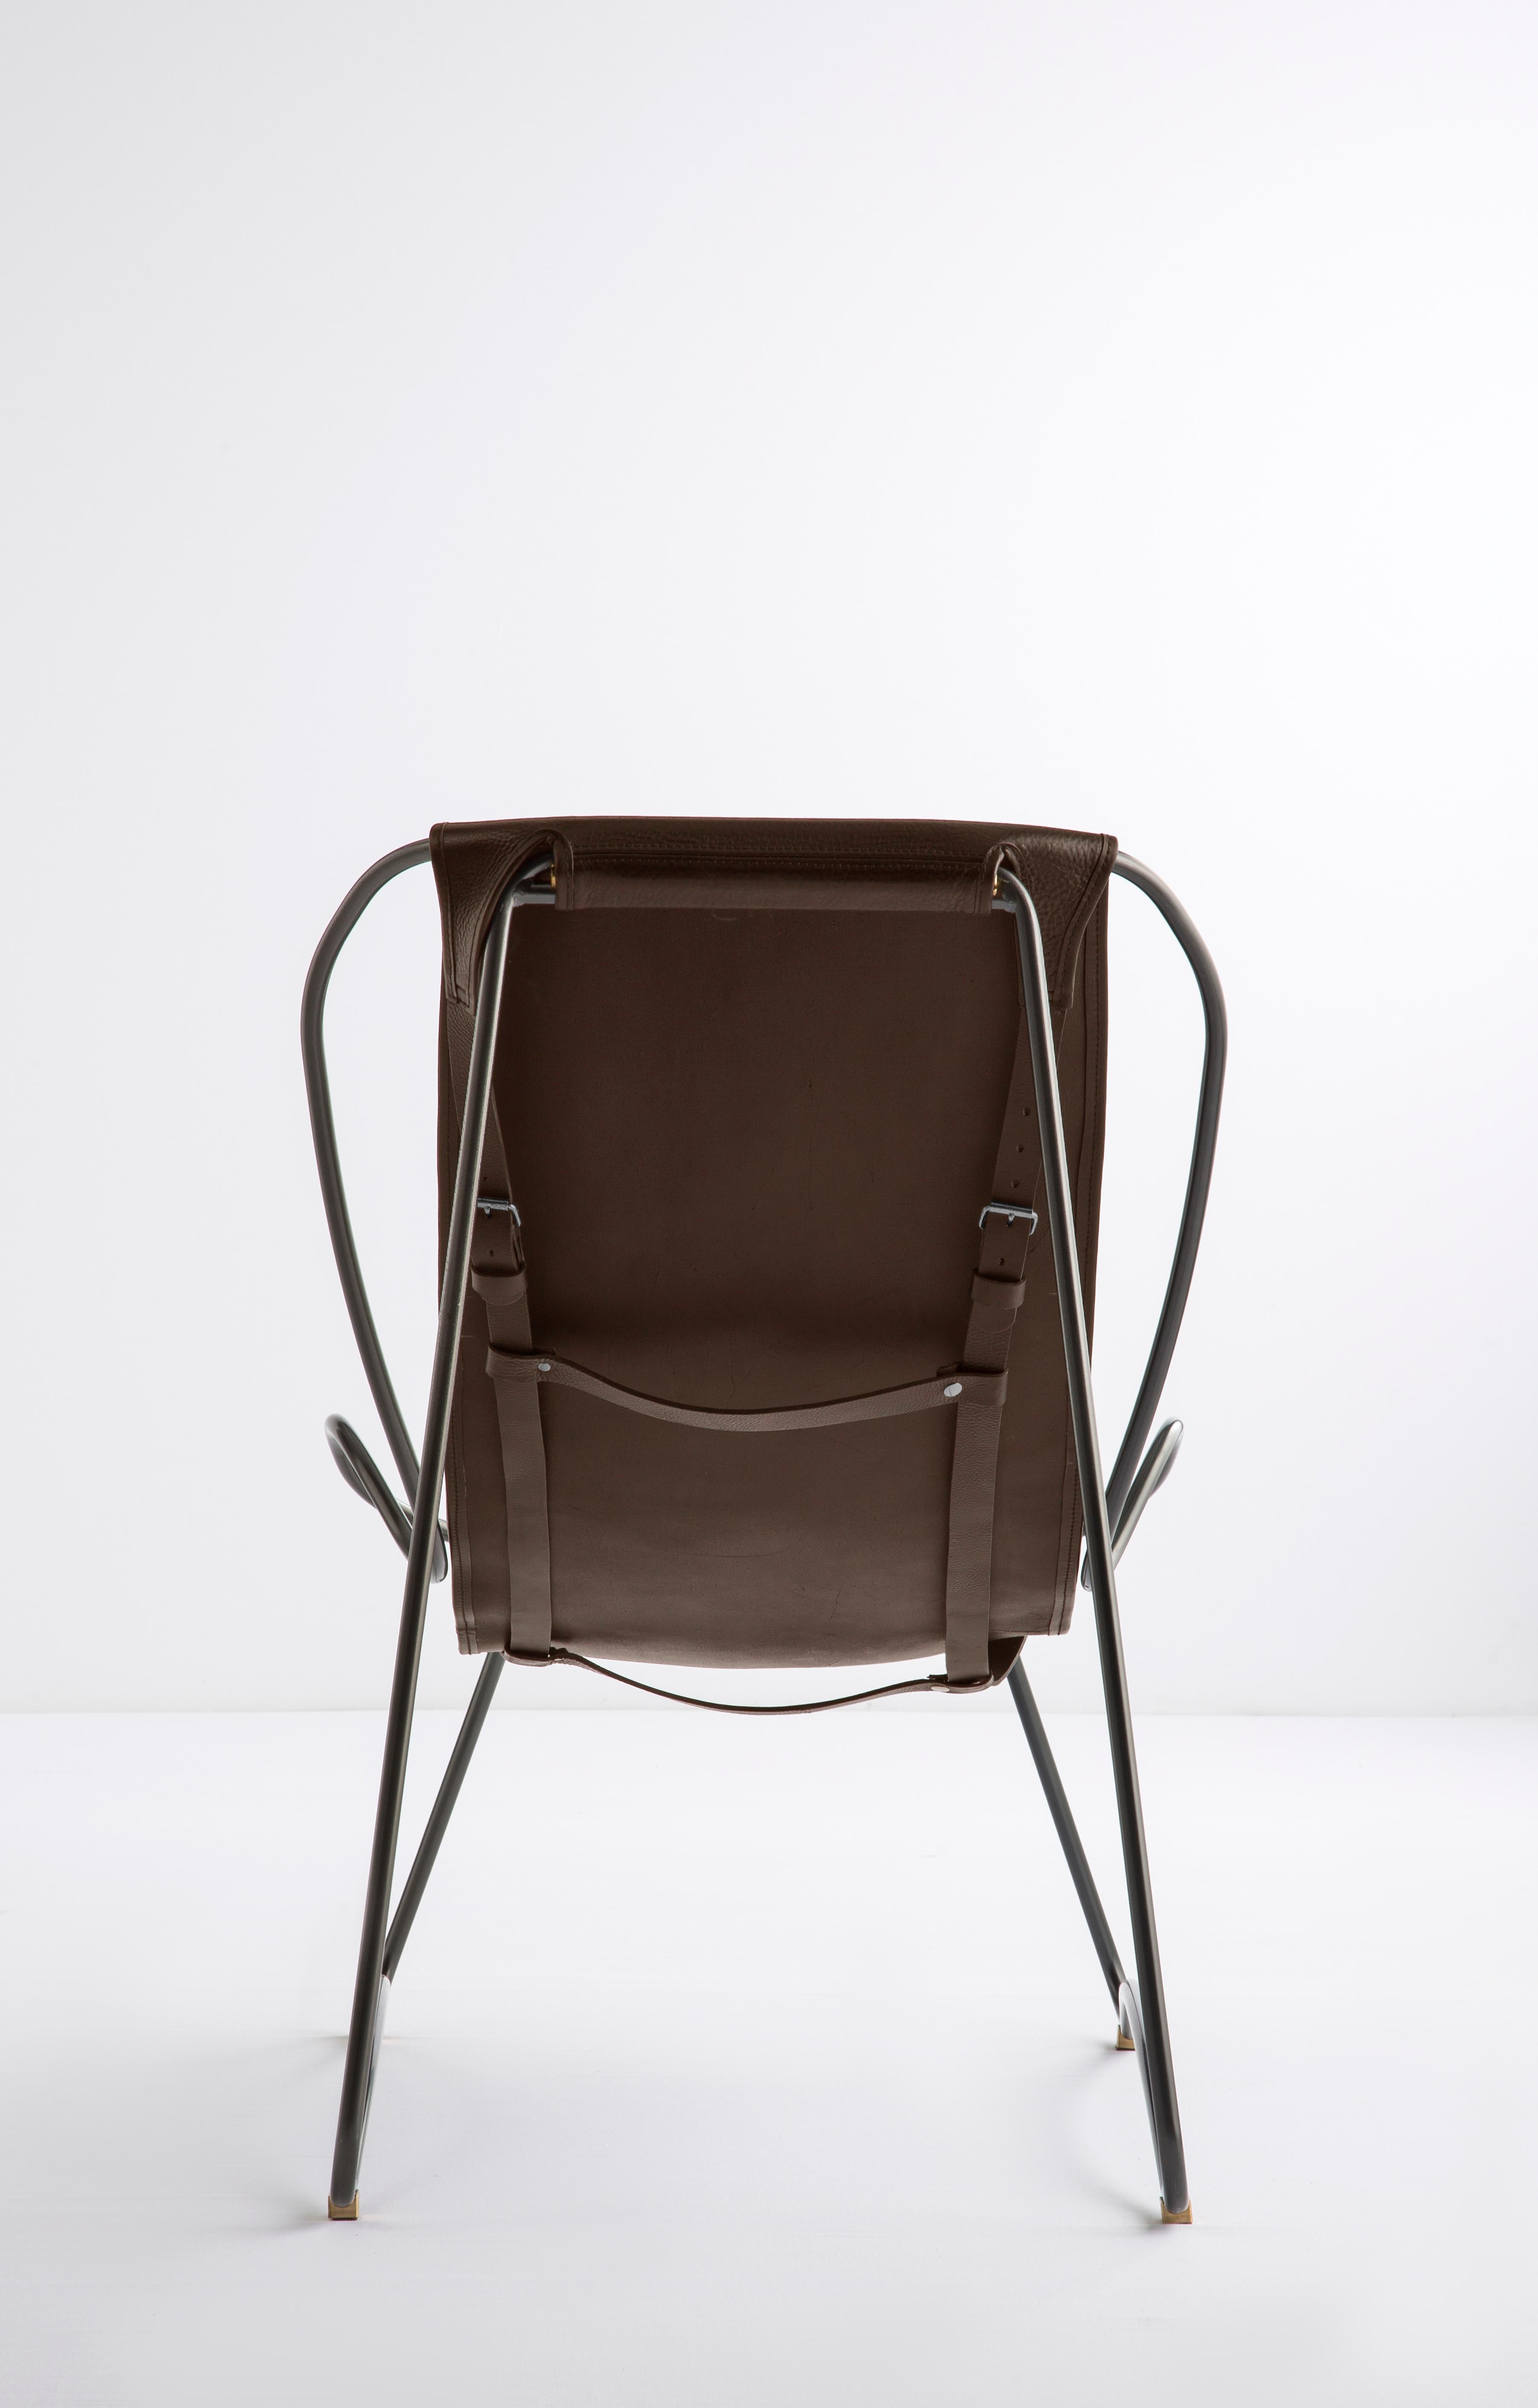 La chaise longue contemporaine Hug est dessinée et conçue avec une esthétique légère, la légère oscillation de la tige d'acier de 16...  mm est complétée par la souplesse du double cuir de 3,5 mm d'épaisseur. En s'asseyant dans ce meuble, on ressent